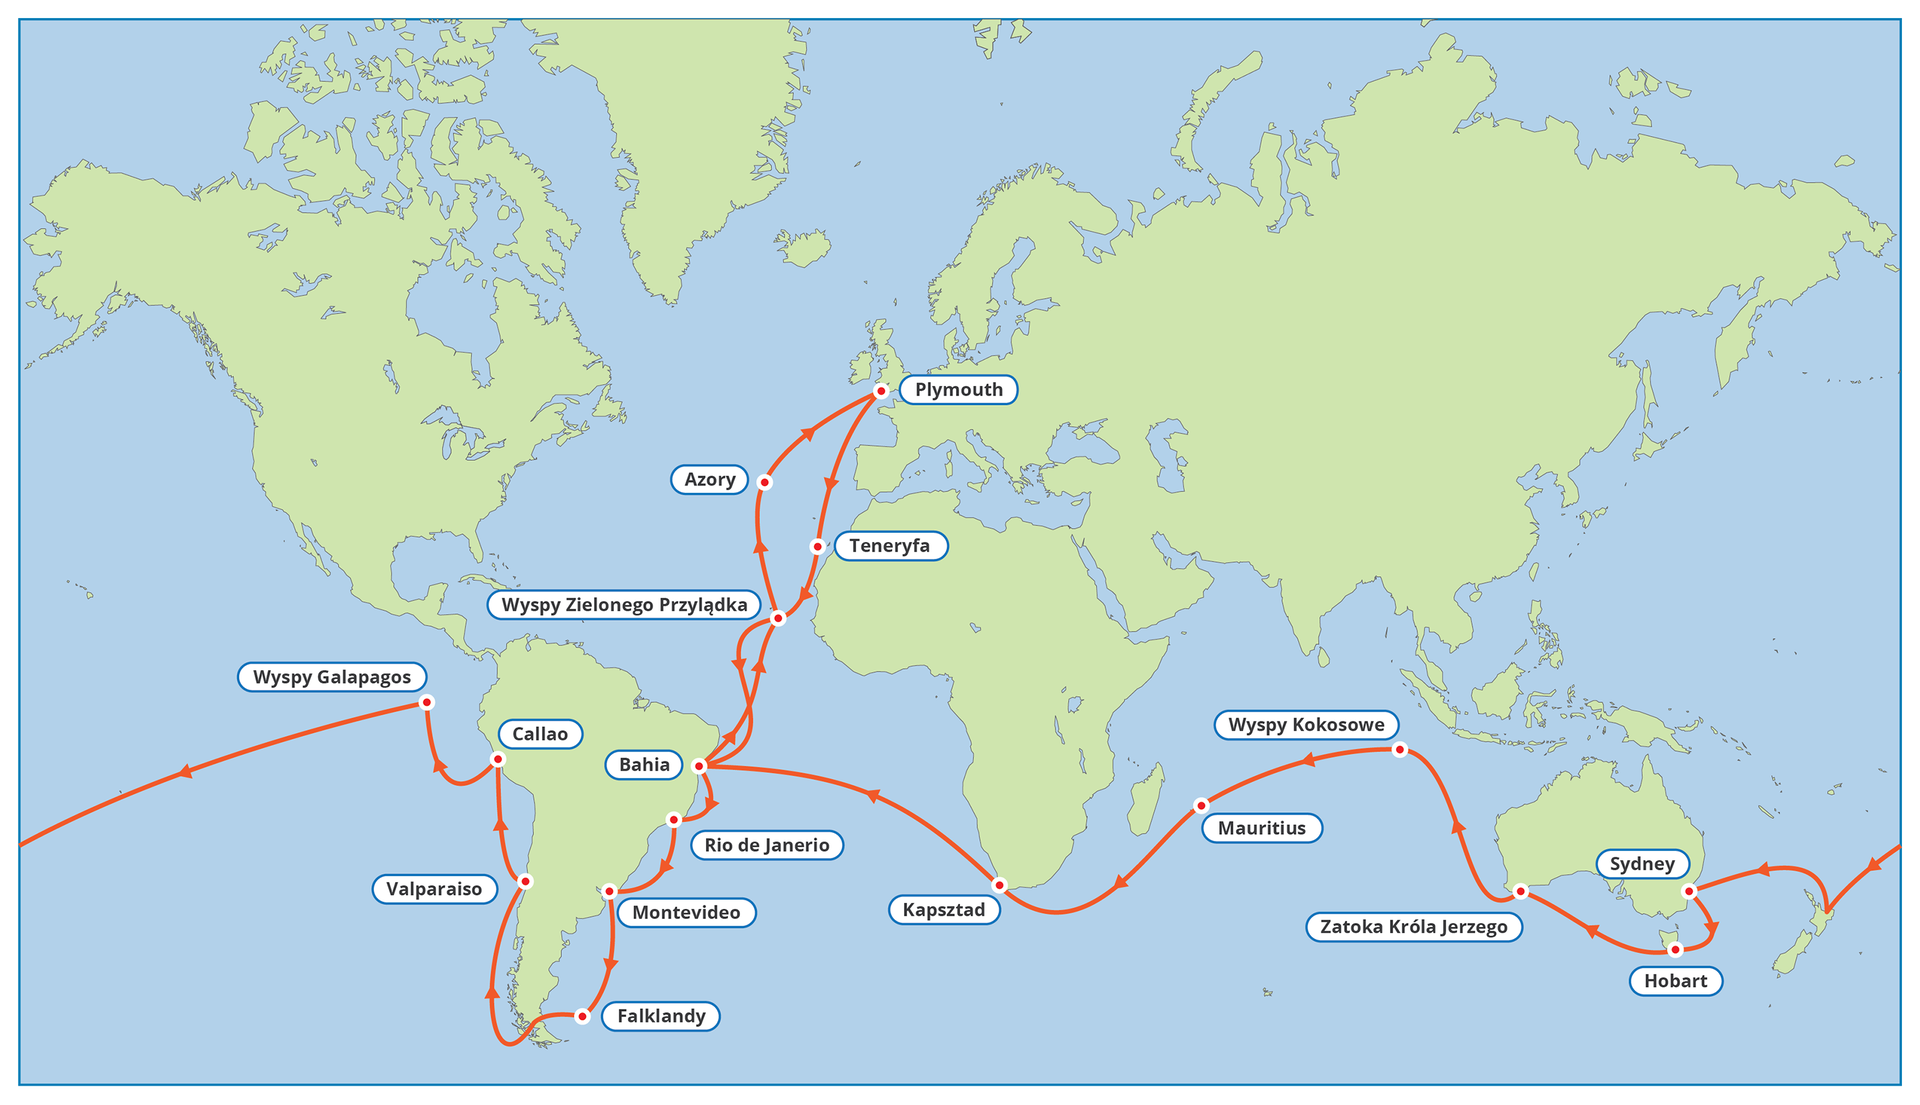 Na mapie świata czerwonymi strzałkami zaznaczono trasę rejsu statku o nazwie „Beagle”, na którym Darwin płynął na wyprawę badawczą dookoła świata. Obok podano nazwy portów. Statek wypłynął z Plymouth w Wielkiej Brytanii i przez Teneryfę i Wyspy Zielonego Przylądka dotarł najpierw do Bahii w Ameryce Południowej. Kontynuował rejs wzdłuż wybrzeży kontynentu, dopływając do Falklandów. Przez Cieśninę Magellana wyprawa dotarła na wschodnie wybrzeże Ameryki południowej i na Wyspy Galapagos. Stamtąd badacze przez Ocean Spokojny dotarli do Sydney w Australii, następnie na Tasmanię. Przez Zatokę Króla Jerzego, Wyspy Kokosowe i Mauritius dopłynęli do Kapsztadu w Afryce. Znów zawitali do Bahii i stamtąd przez Azory powrócili do Anglii.